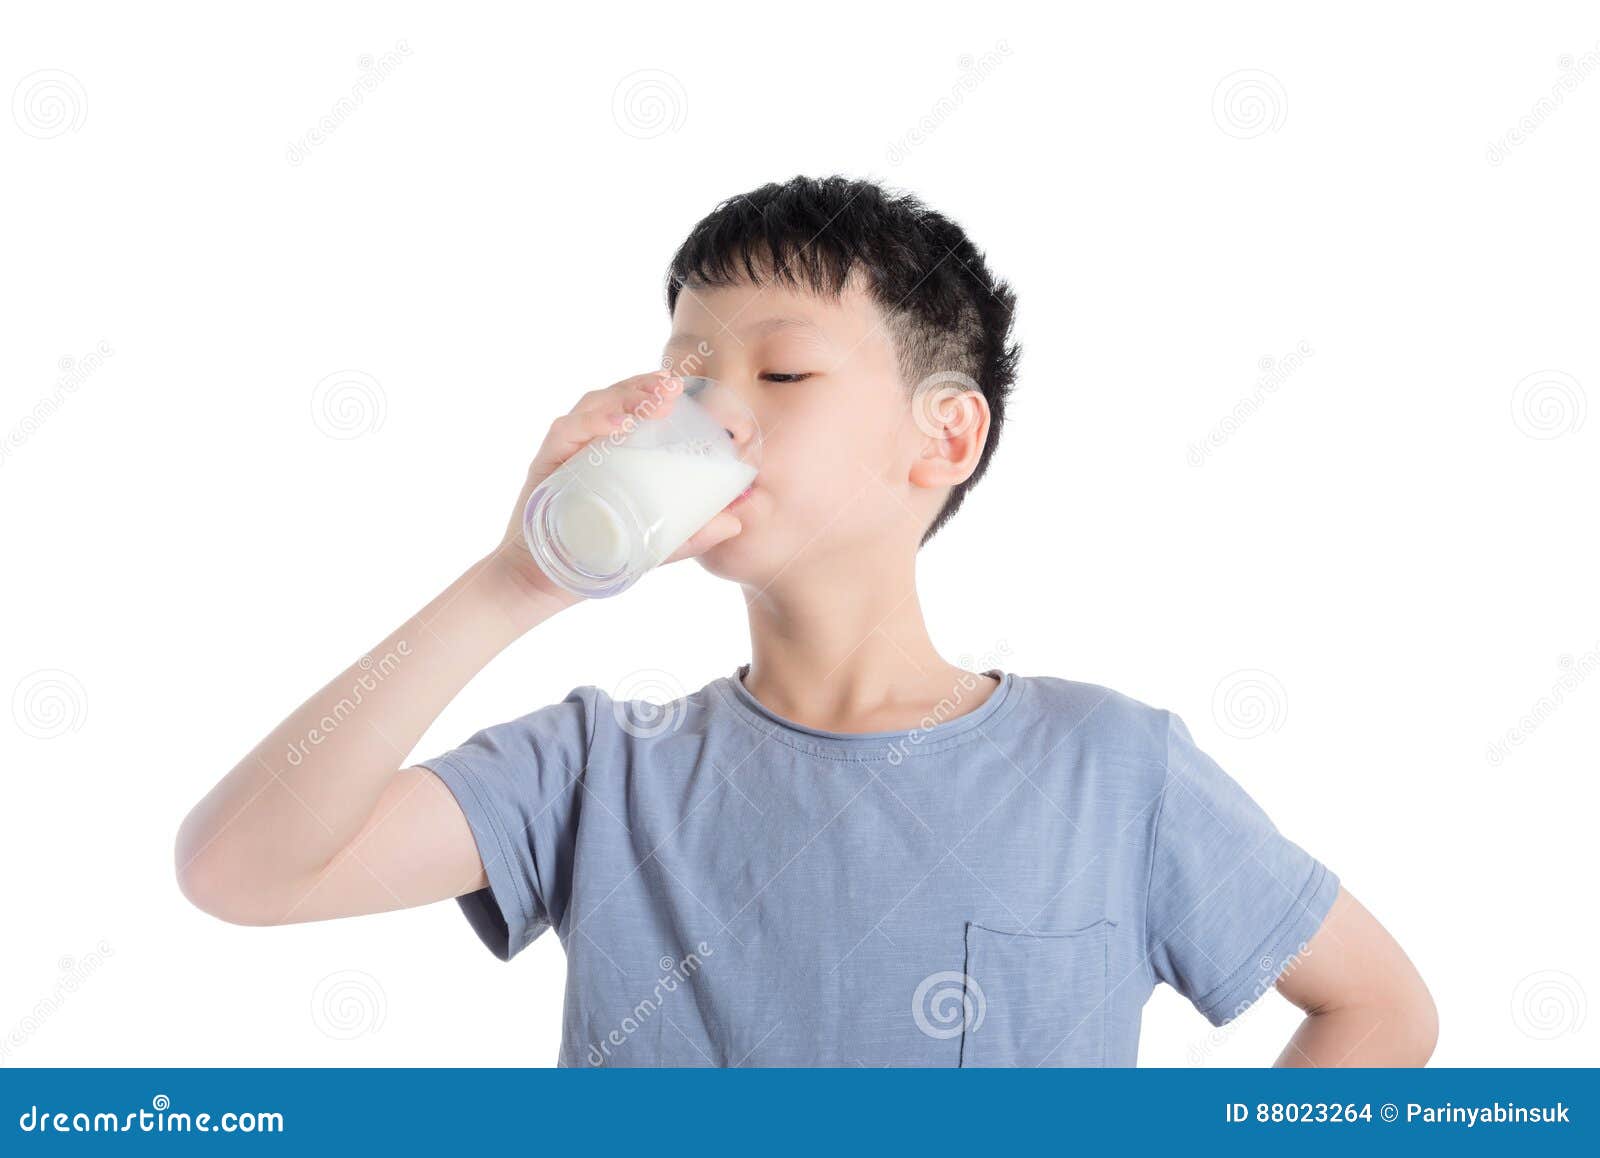 Пьет молоко на английском. Мальчик пьет молоко. Мальчик пьет на белом фоне. Ребенок пьет молоко. Мальчик с молоком.